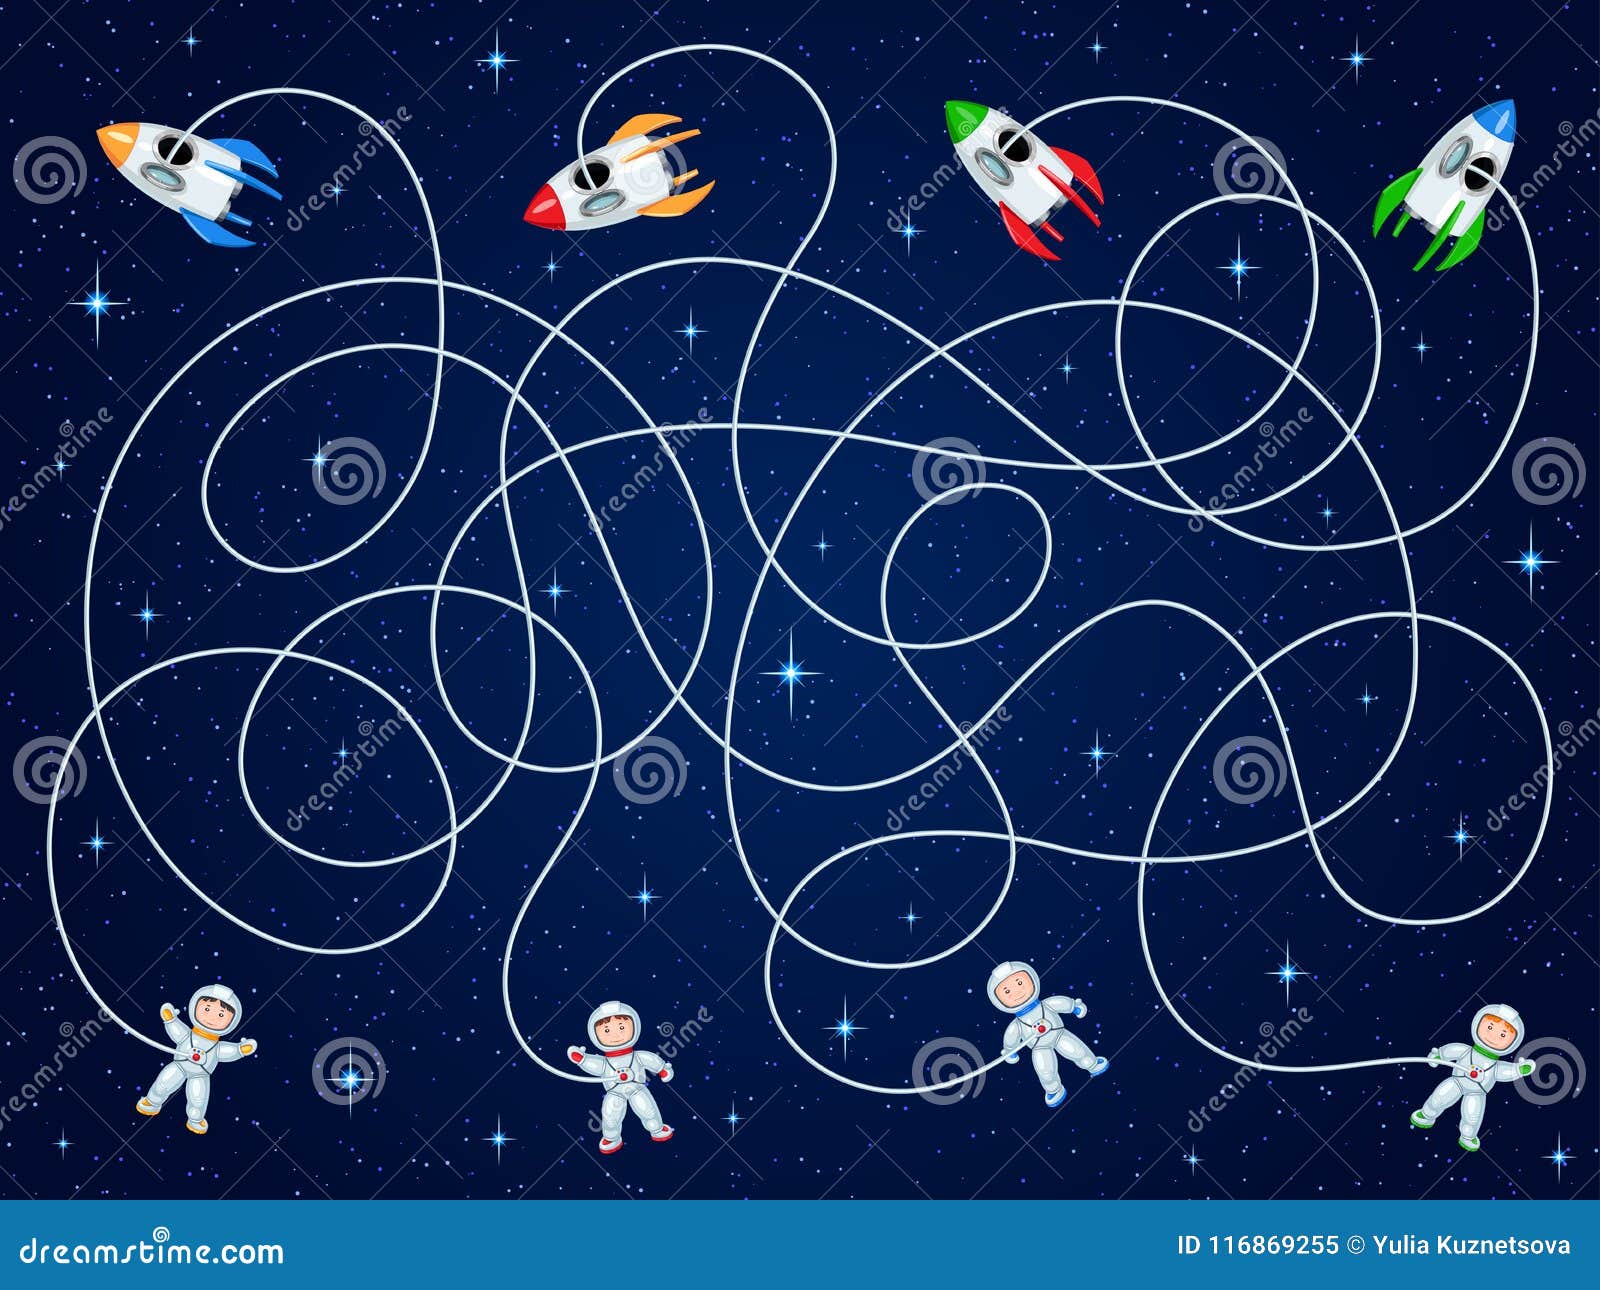 Игры космос средняя группа. Космос для дошкольников. Детям о космосе. Тема космос для детей. О космосе (развивающая игра).